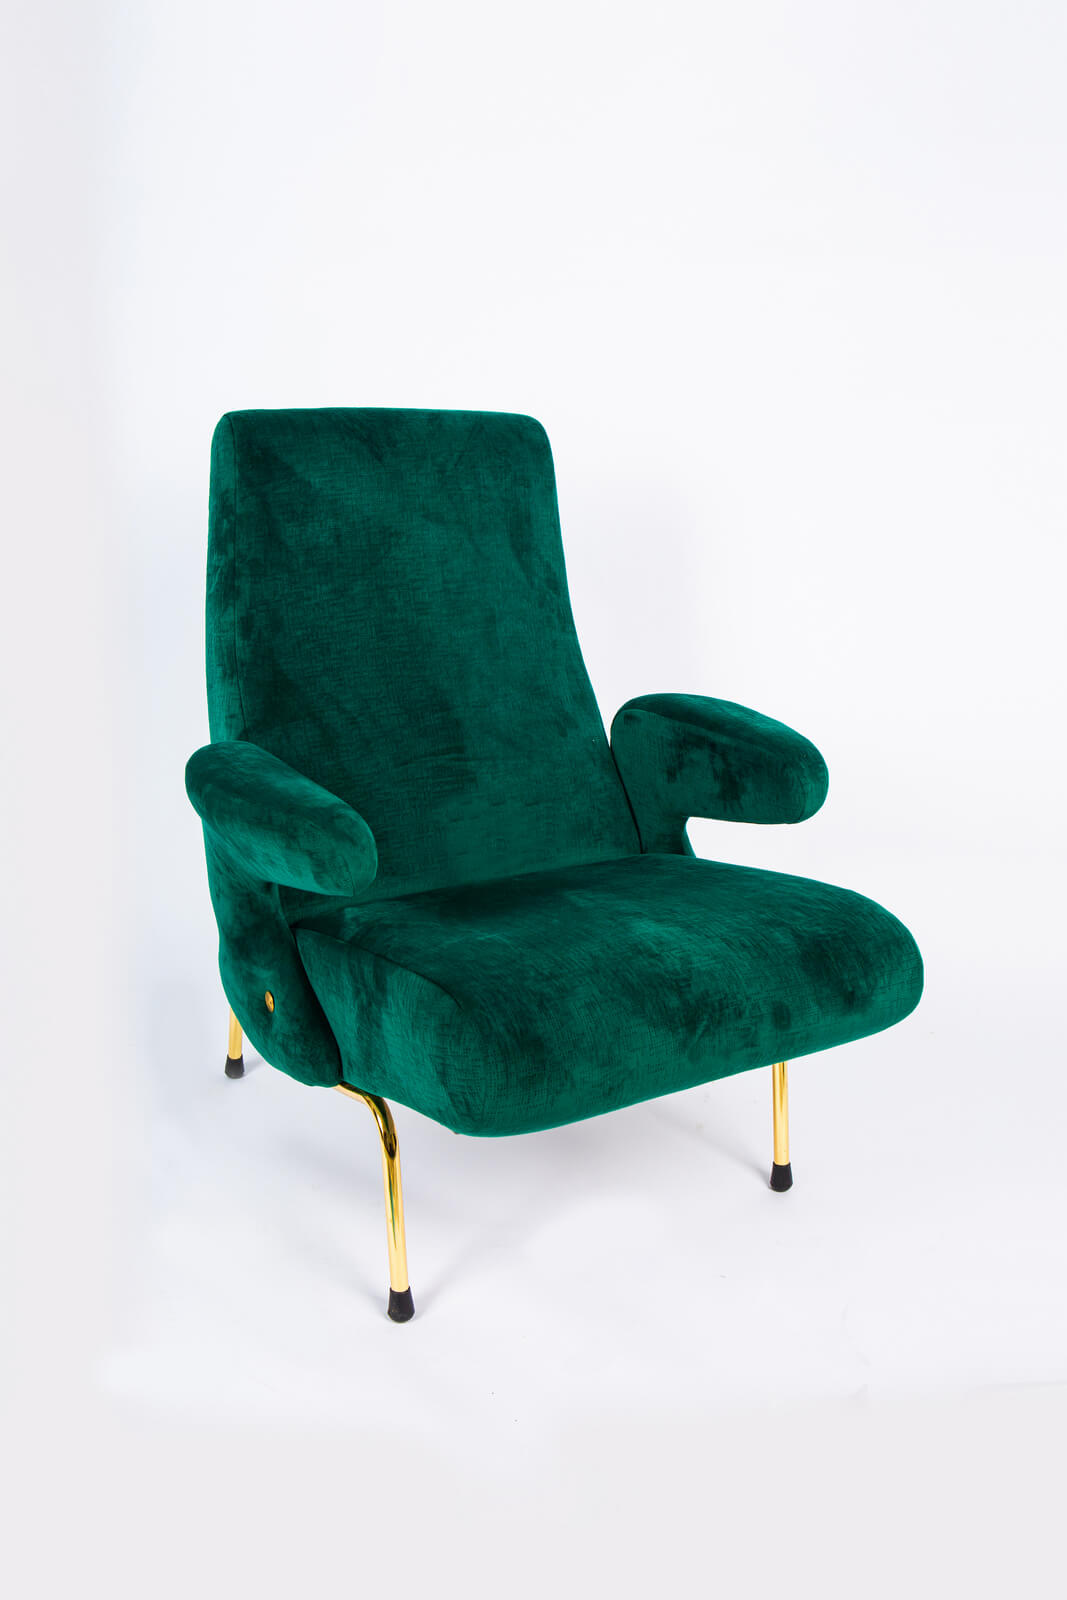 Кресло «Delfino», Erberto Carboni - продажа в Москве